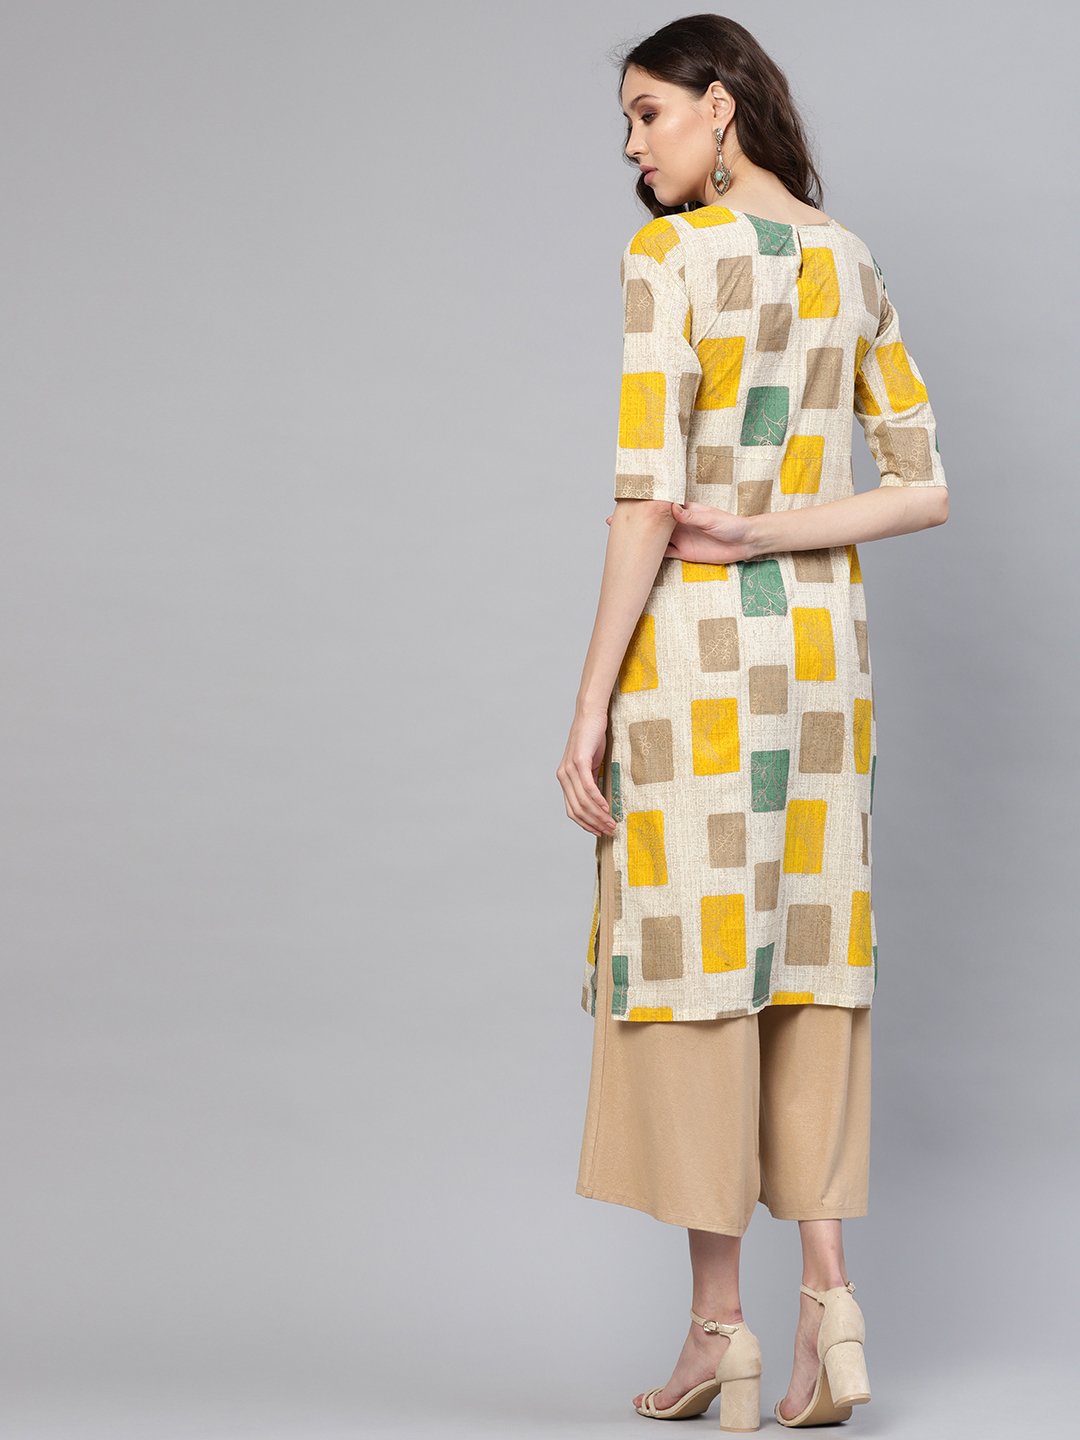 Women's Off-White & Mustard Yellow Printed Straight Kurta - Nayo Clothing